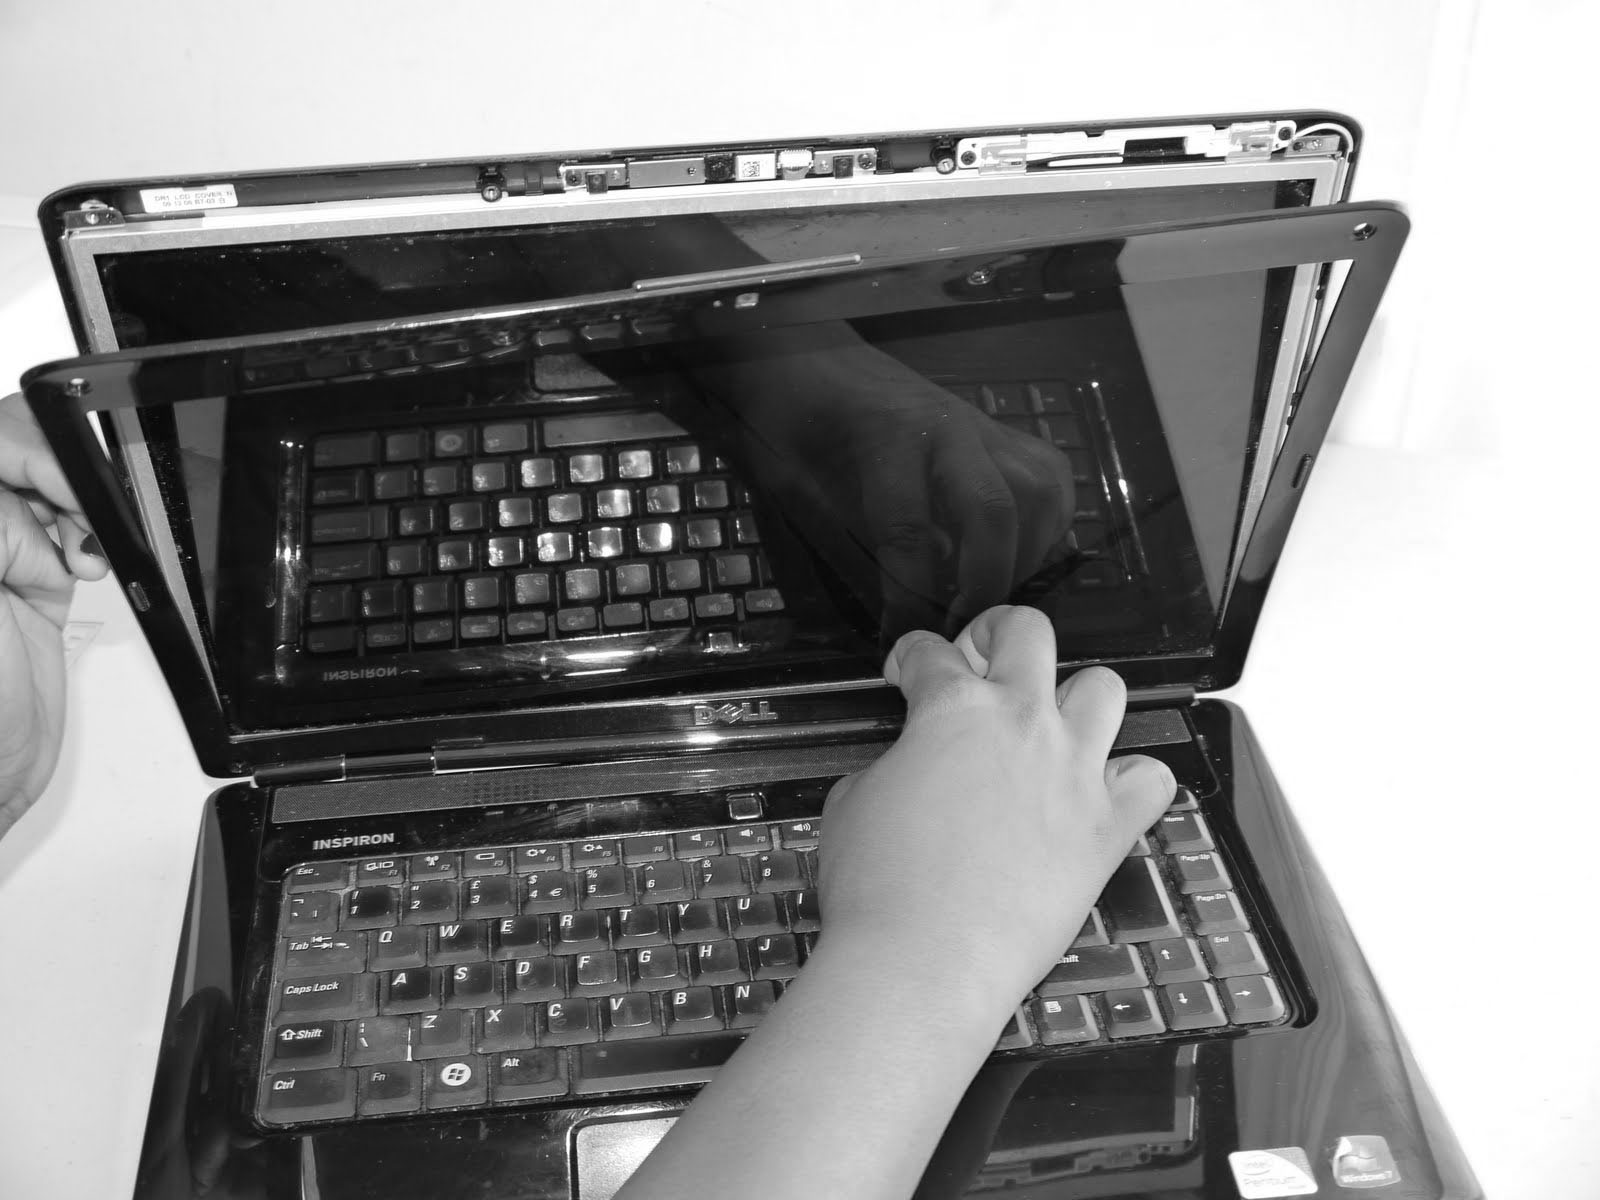 toshiba laptop screen, screen damage, screen repair, screen broken, screen repair images